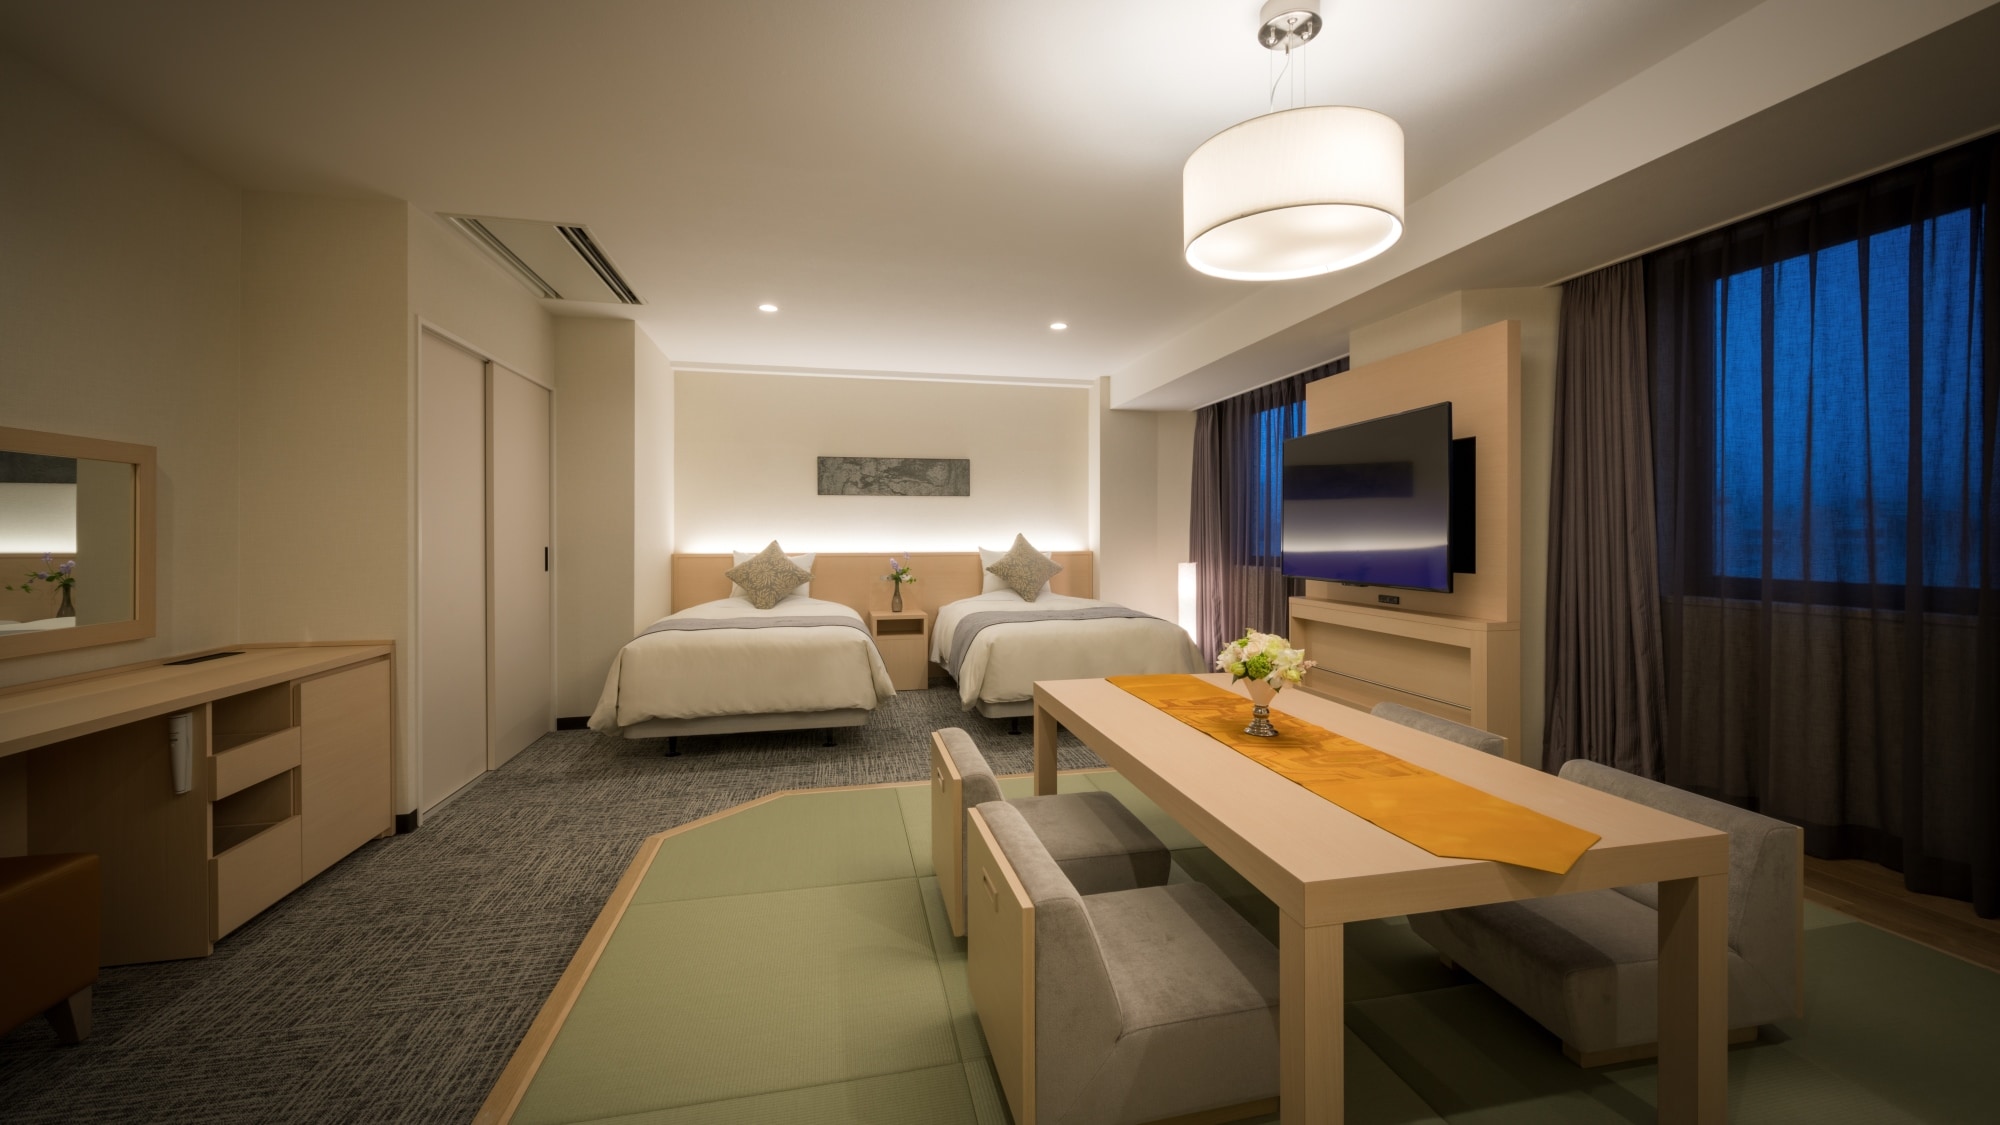 【2018年裝修★日西式房間】西式房間有兩張120厘米寬的床和一間特別的日式房間。最多可容納 4 人